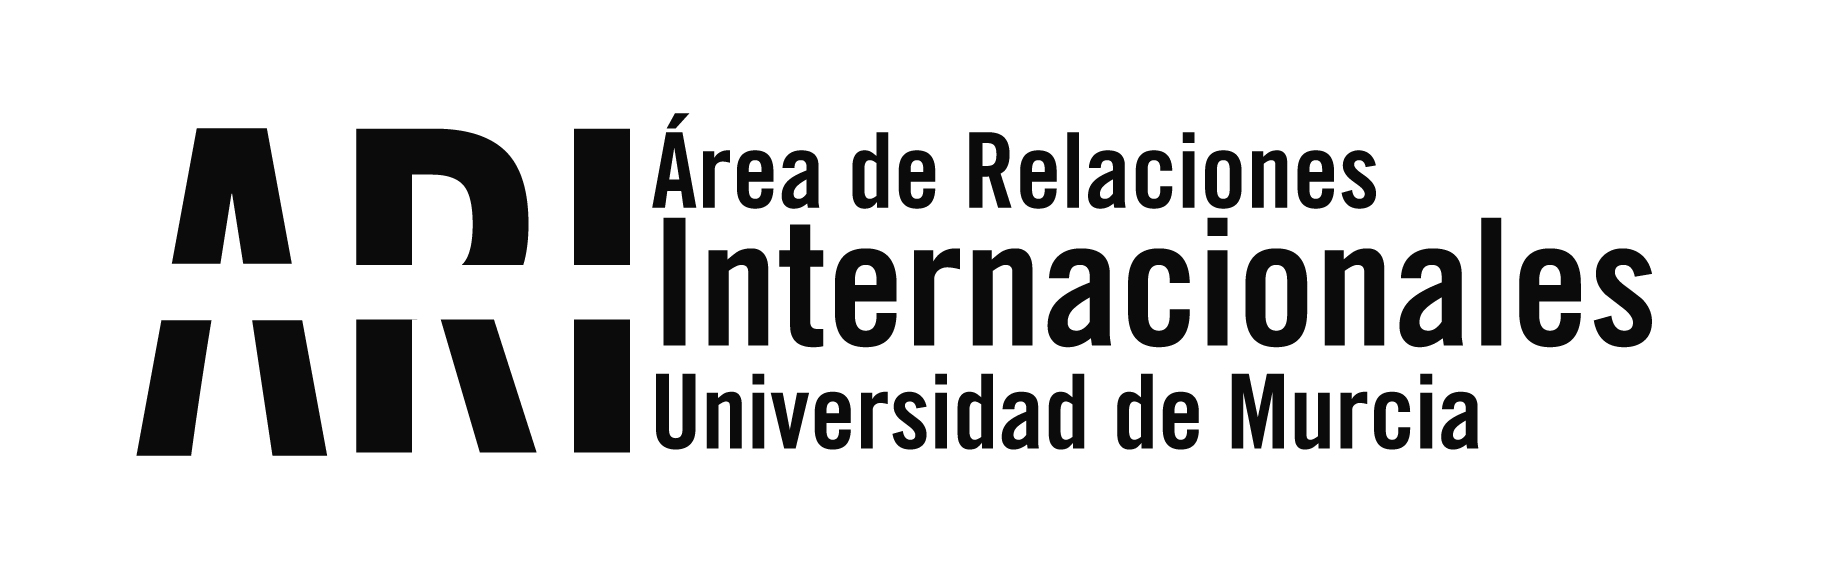 Convocatorias abiertas de movilidad internacional de la Universidad de Murcia - Área de Relaciones Internacionales